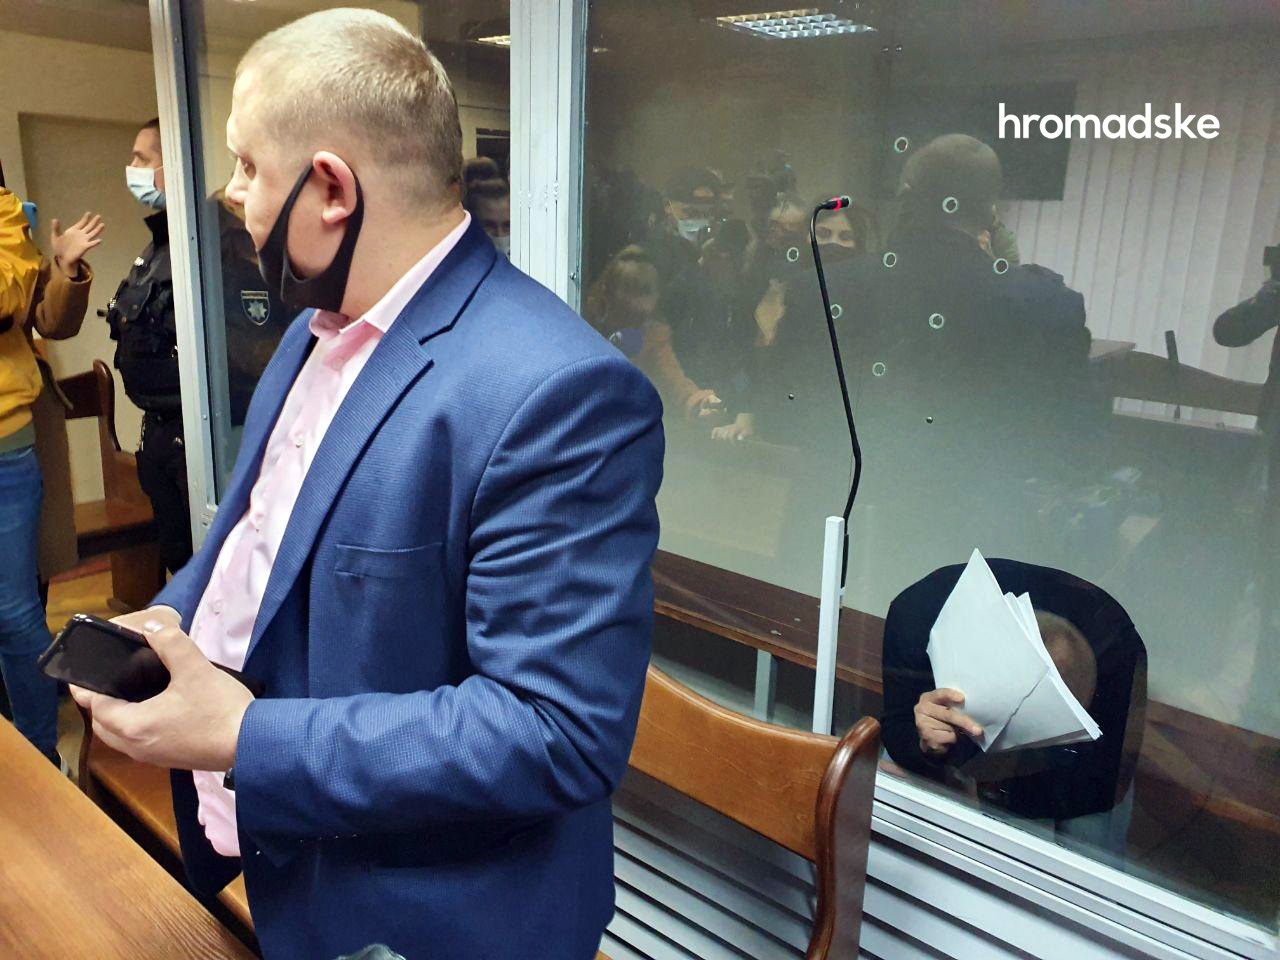 Изнасилование в Кагарлыке: Суд арестовал второго подозреваемого - ФОТО, ВИДЕО  - фото 1